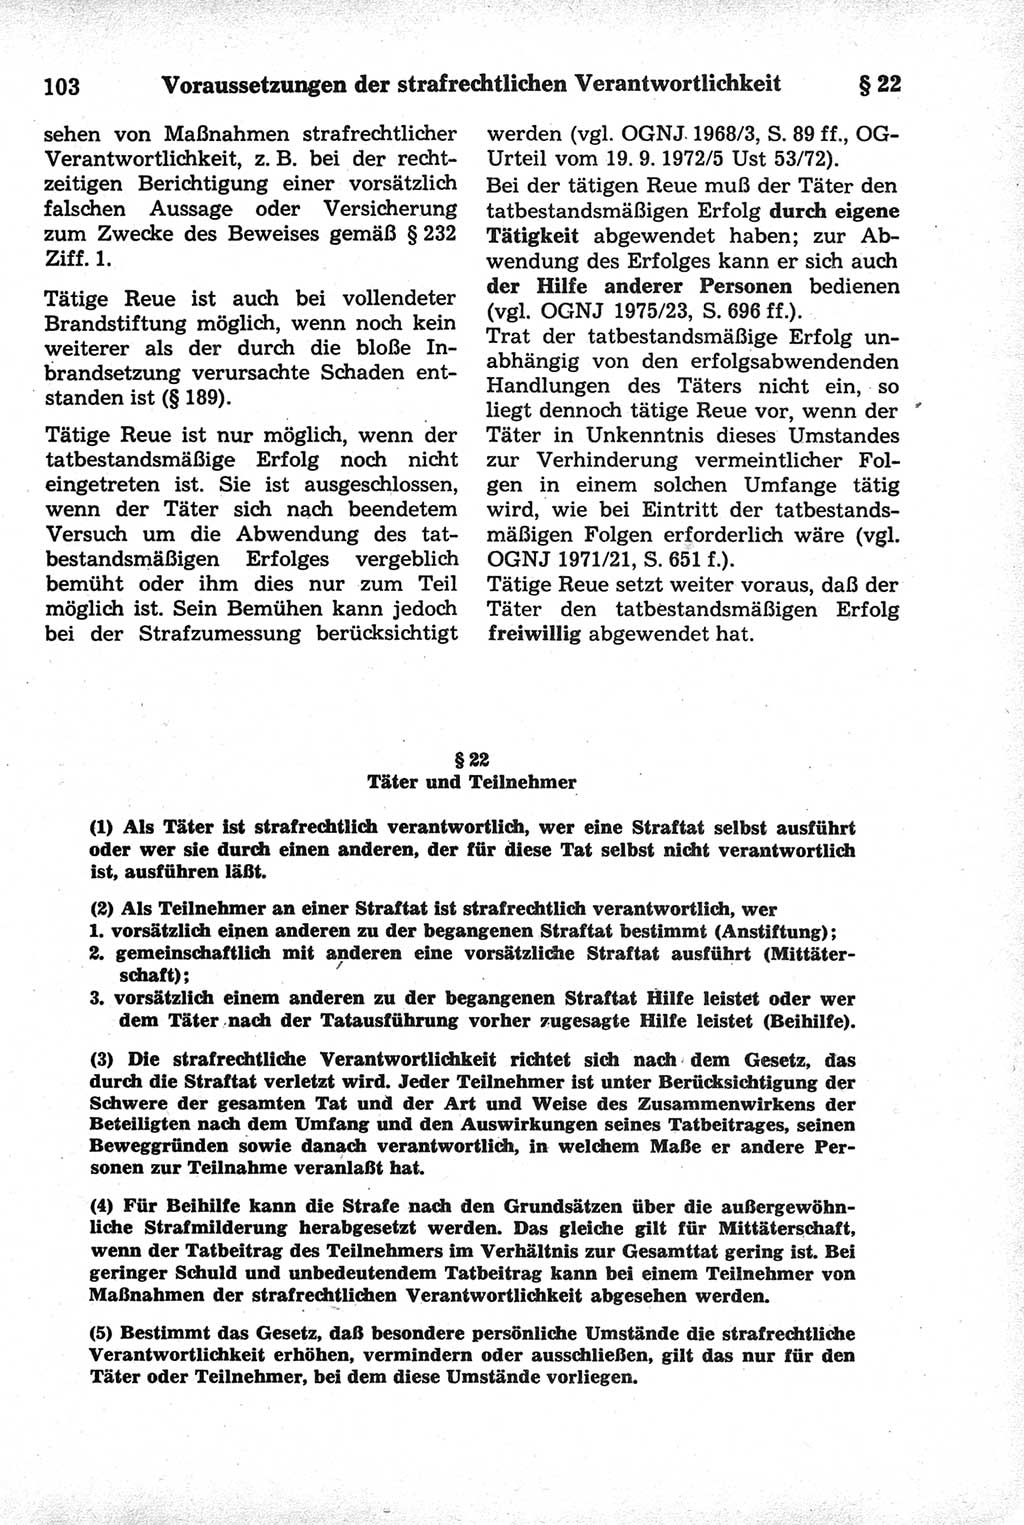 Strafrecht der Deutschen Demokratischen Republik (DDR), Kommentar zum Strafgesetzbuch (StGB) 1981, Seite 103 (Strafr. DDR Komm. StGB 1981, S. 103)